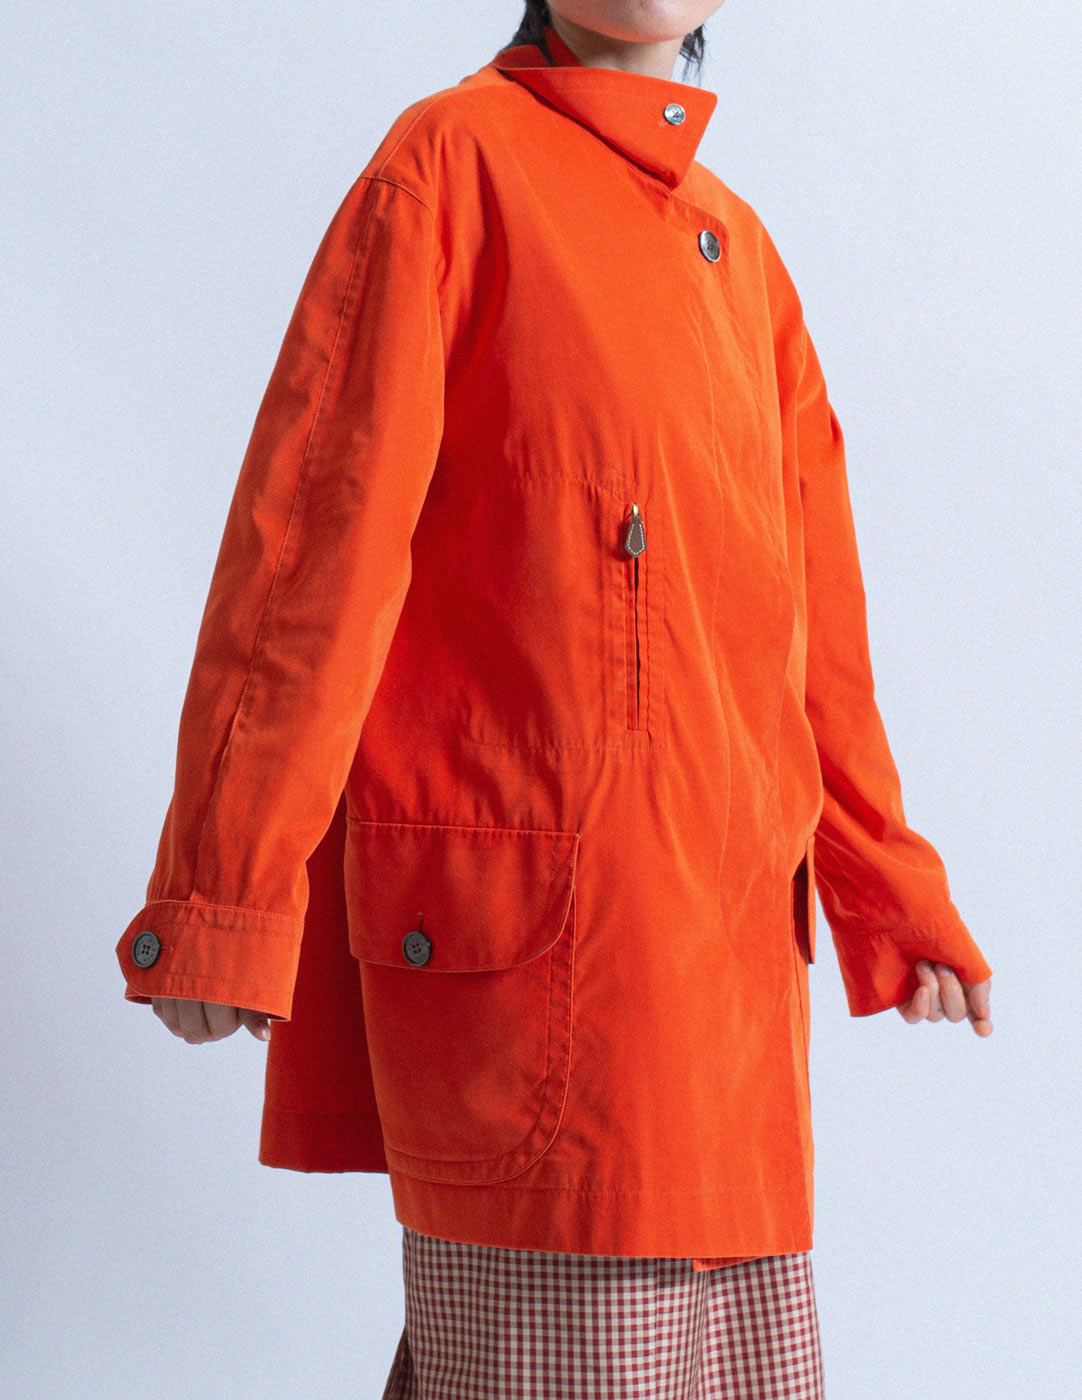 Hermès vintage orange light jacket side detail